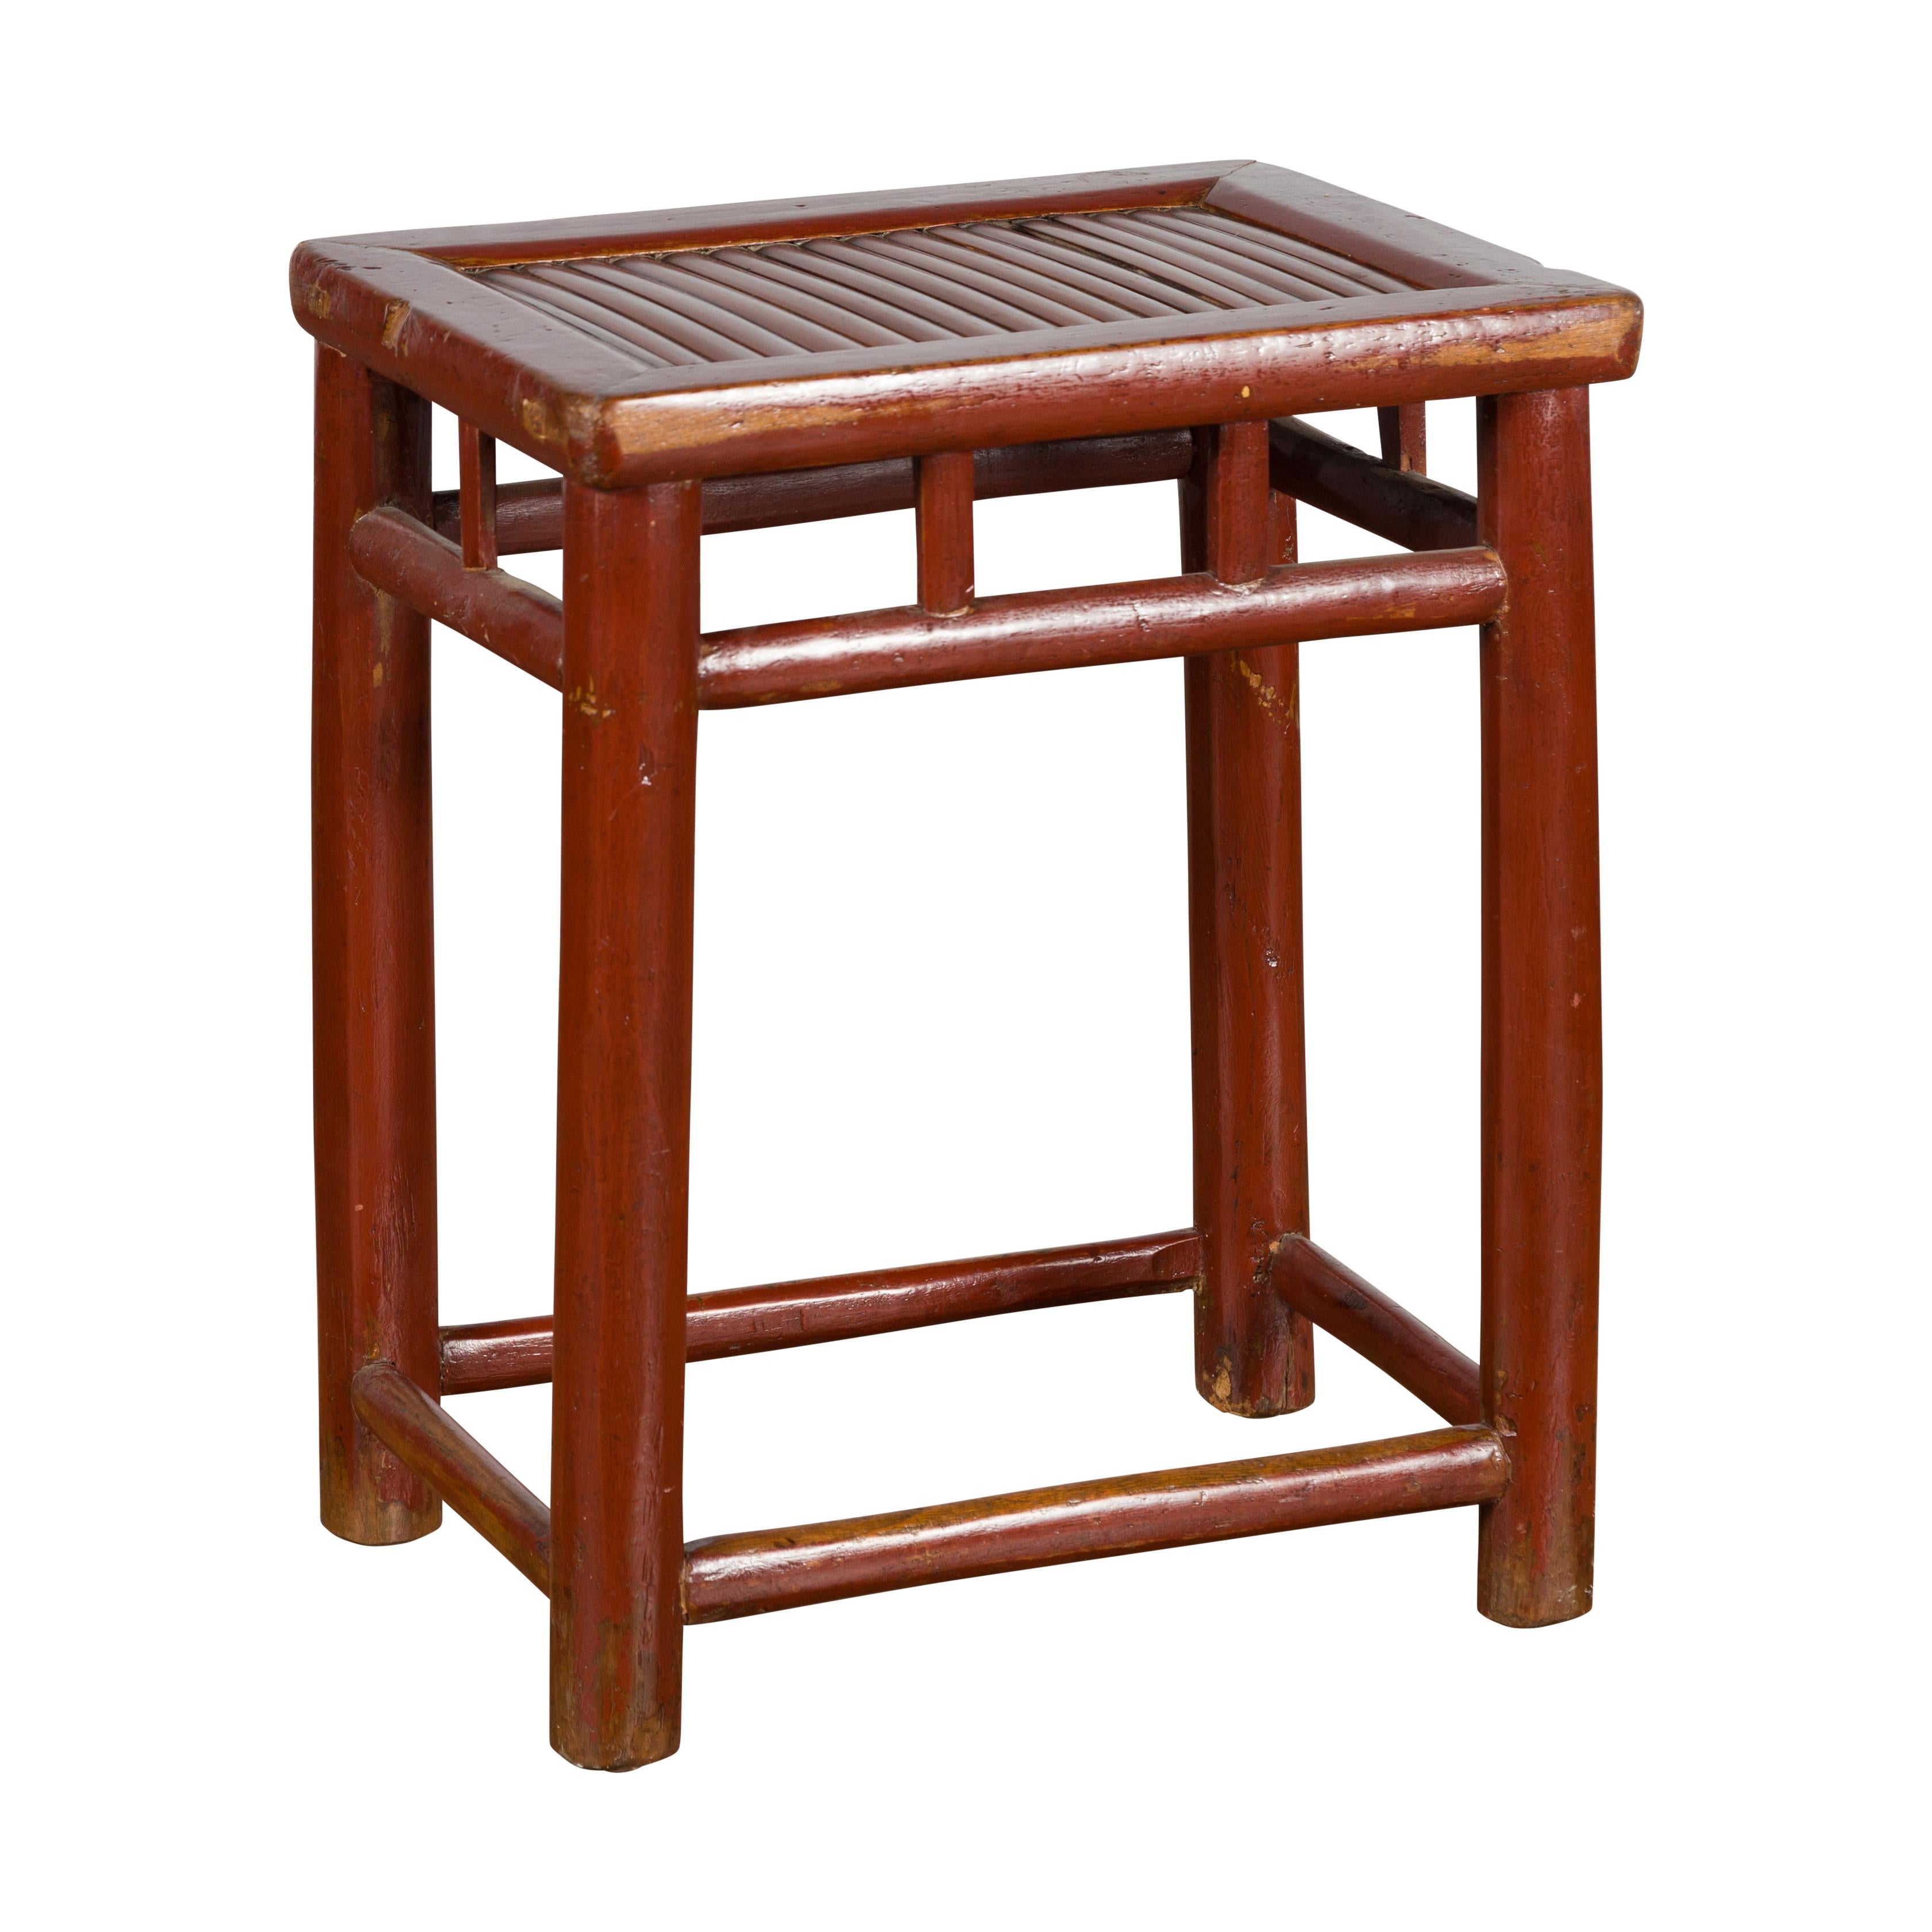 Ein chinesischer, rotbraun lackierter Hocker aus dem frühen 20. Jahrhundert mit Bambussitz und Säulenstrebenmotiven. Dieser in den ersten Jahren des 20. Jahrhunderts in China hergestellte Holzhocker hat eine rechteckige Platte mit einer Sitzfläche